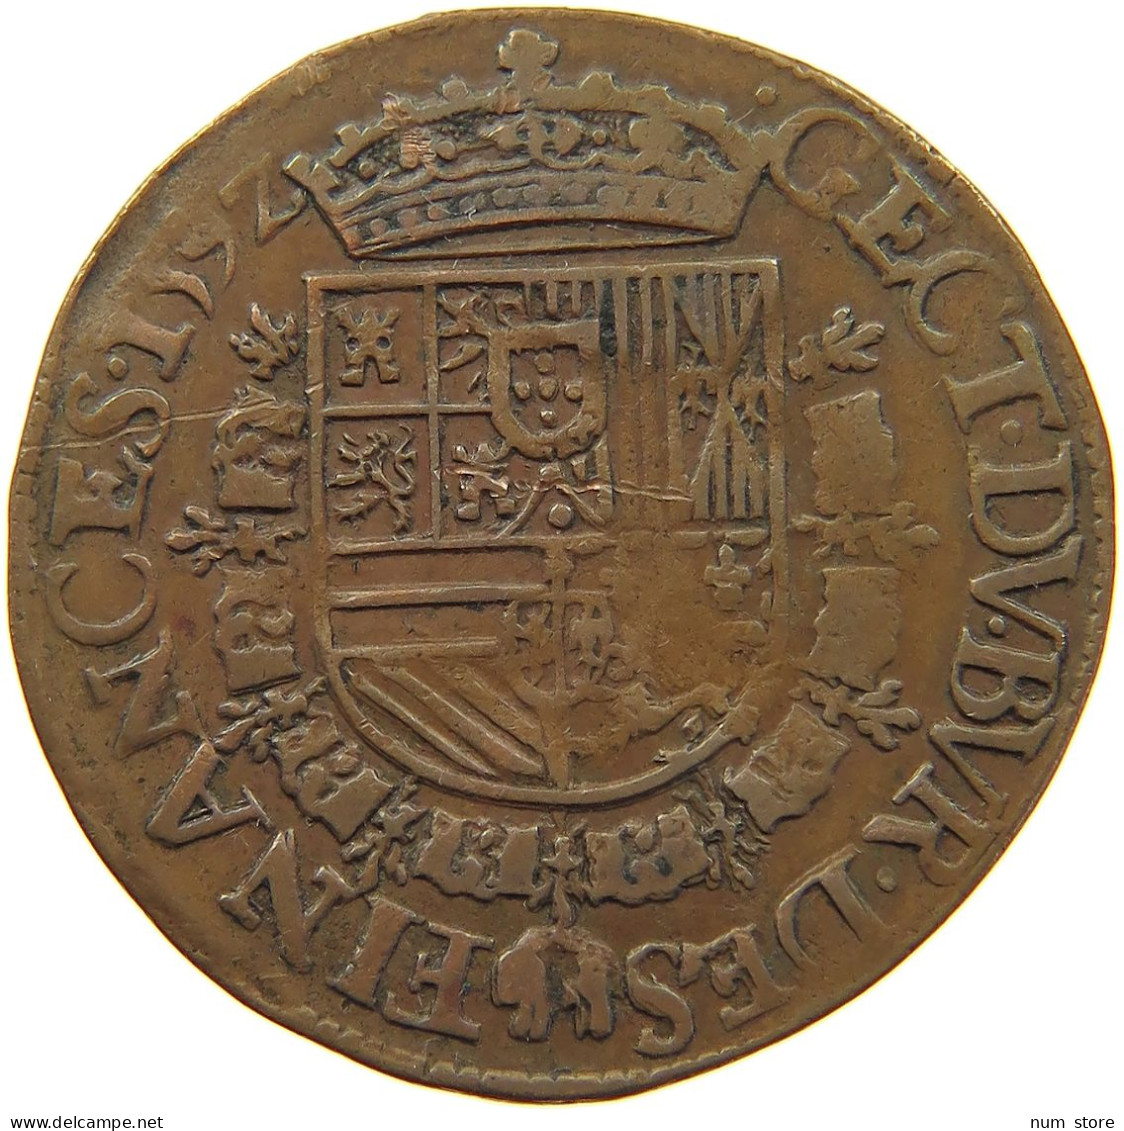 SPANISH NETHERLANDS JETON 1592 FELIPE II. 1556-1598 ANTWERP 'BUREAU DES FINANCES' #MA 103939 - Spanische Niederlande